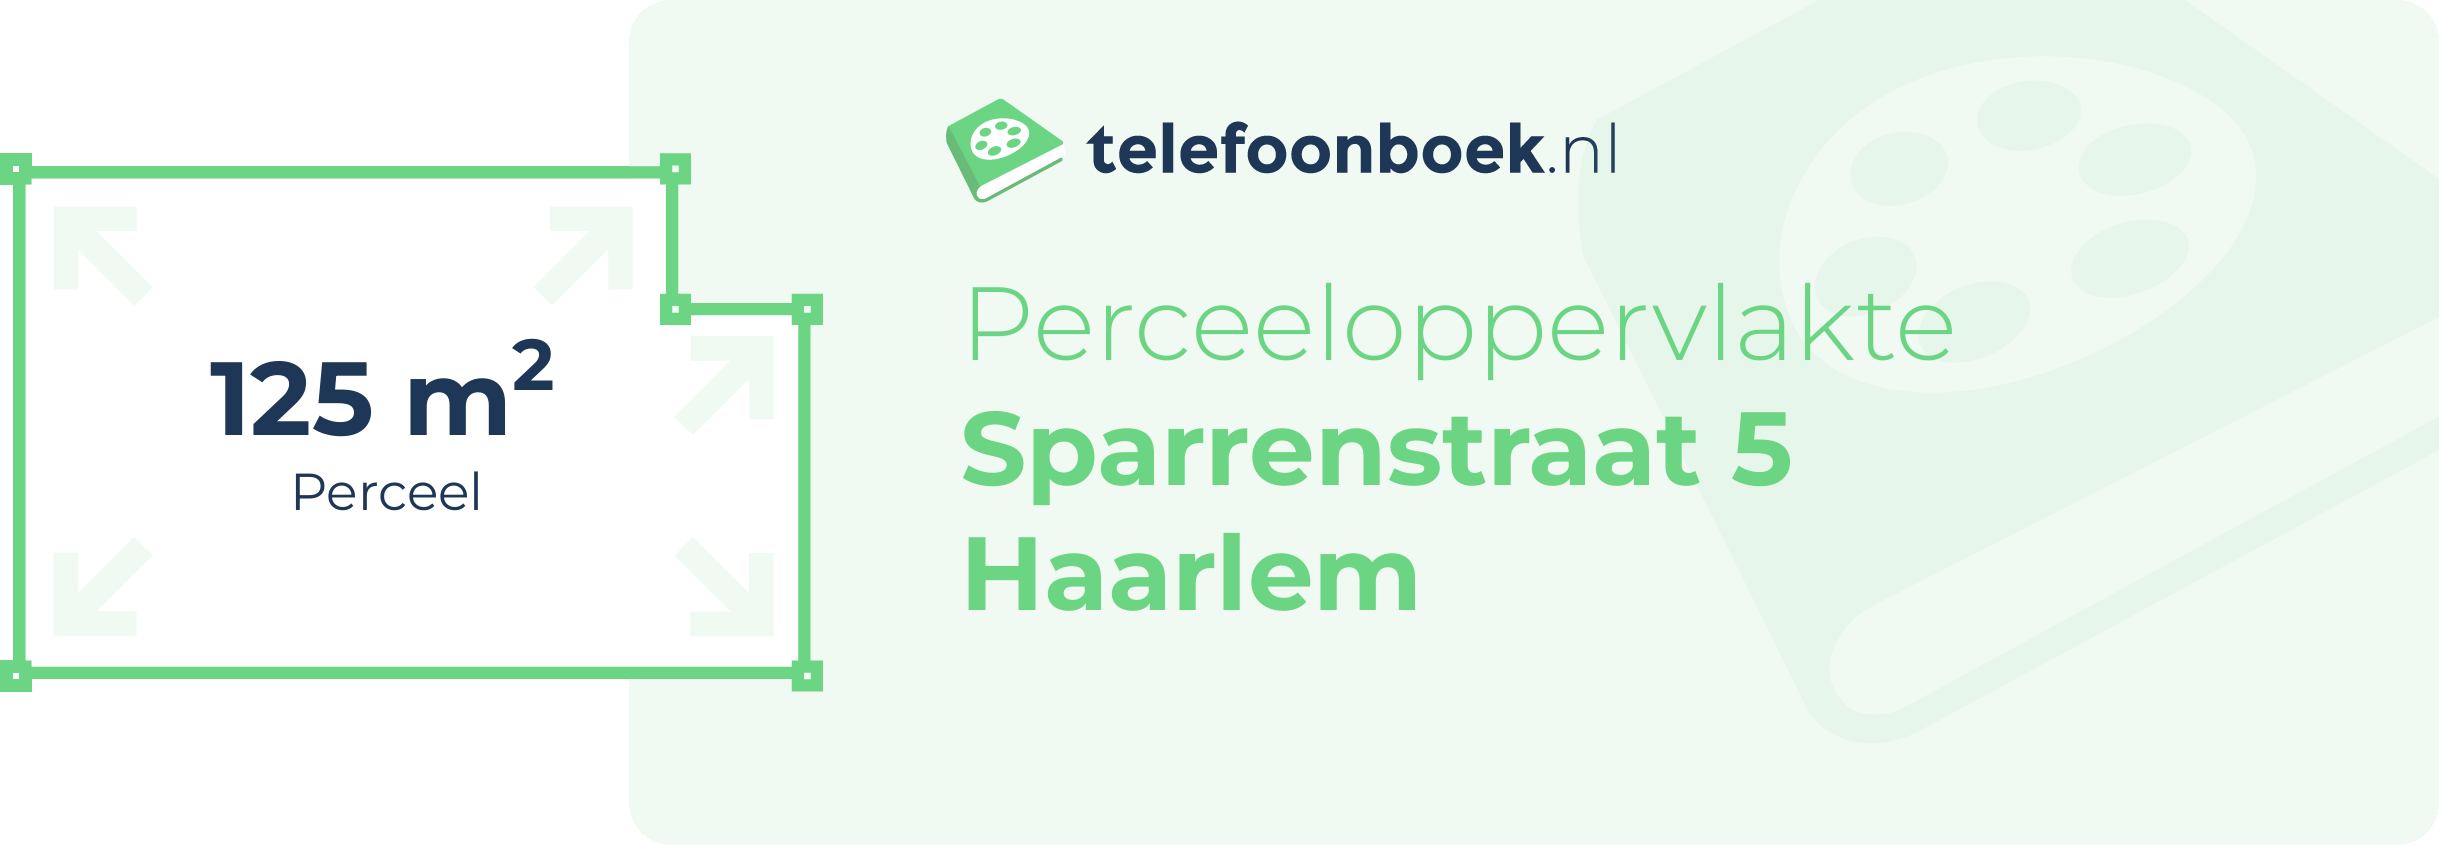 Perceeloppervlakte Sparrenstraat 5 Haarlem